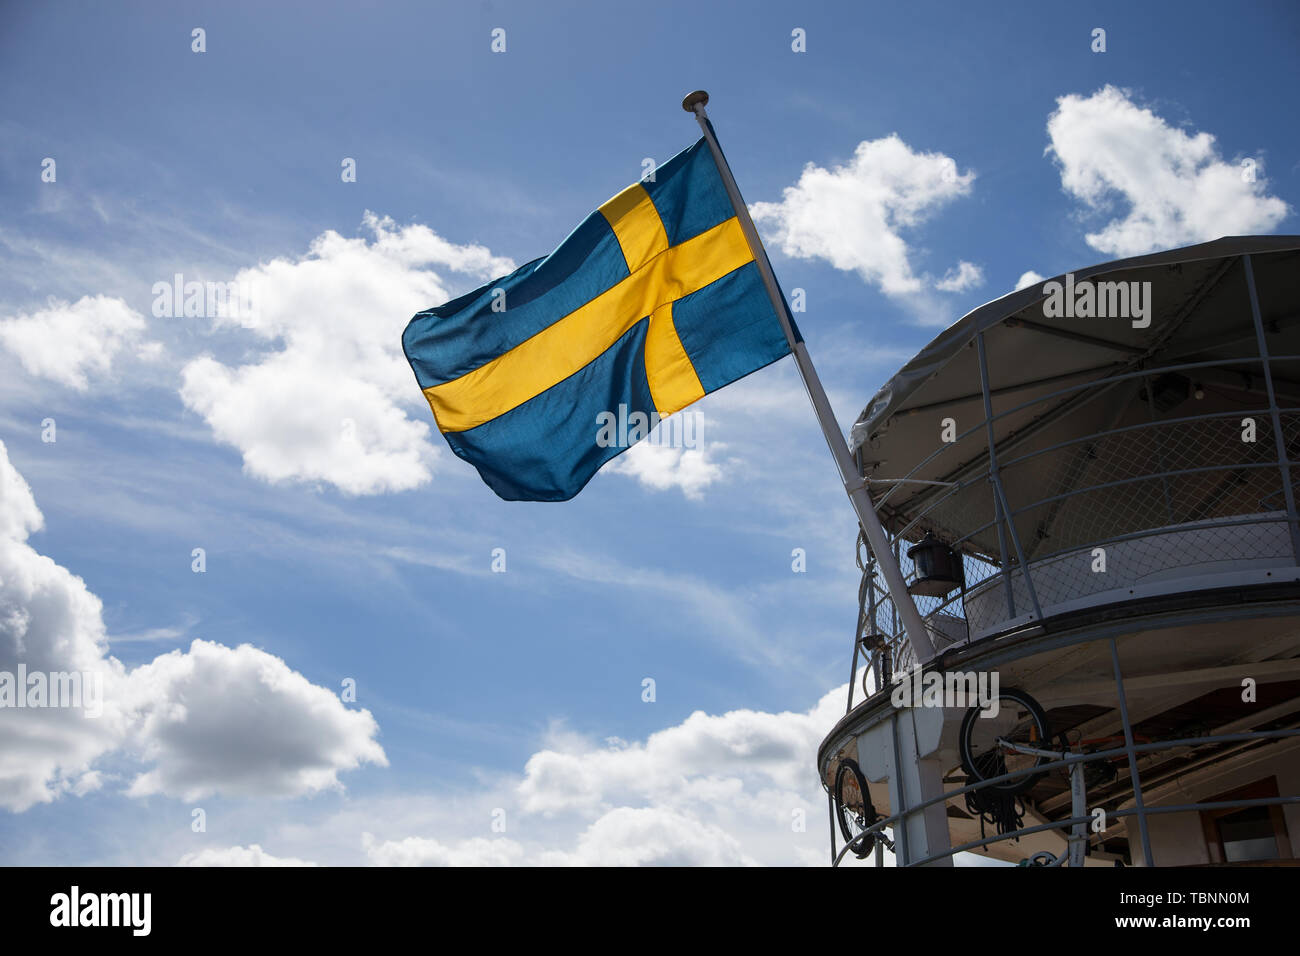 NORSHOLM 20170717 Svenska flaggan i aktern på en båt. Swedish flag ...